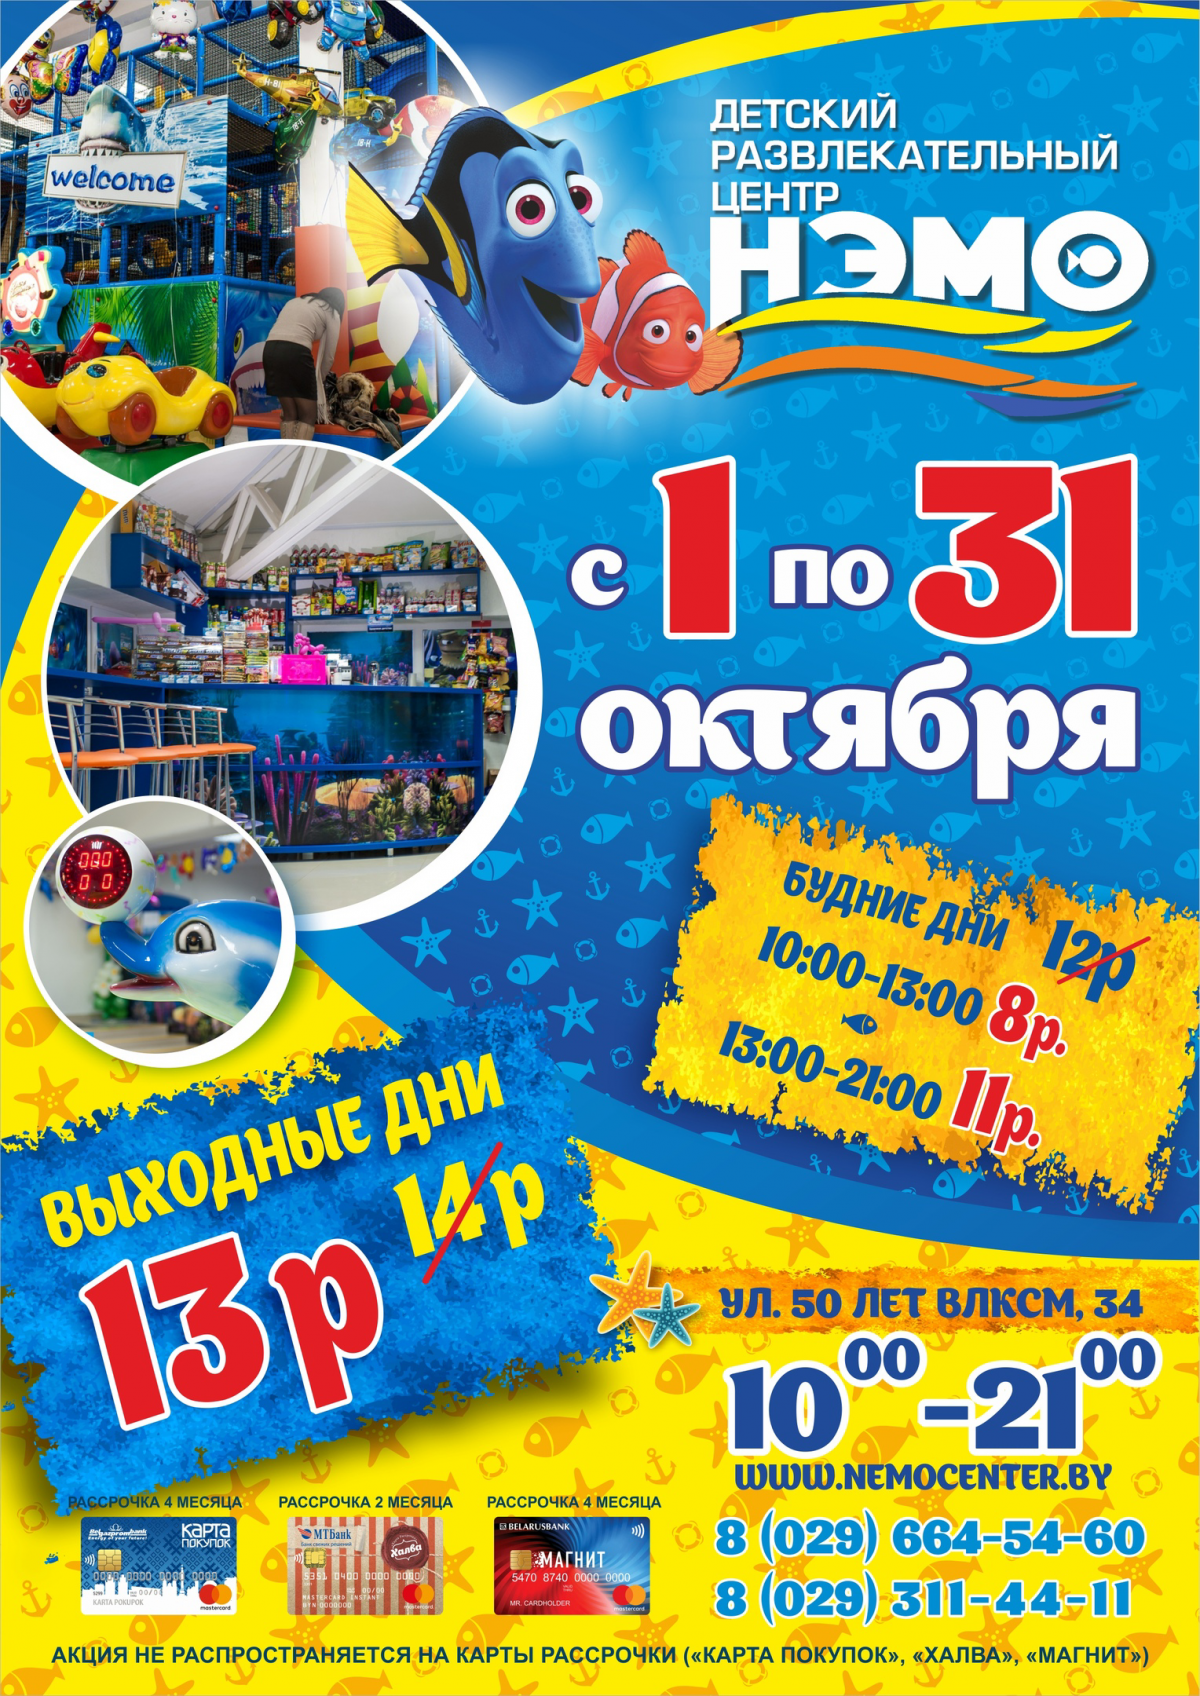 22 октября в детском развлекательном центре «НЭМО» супер акция -50%